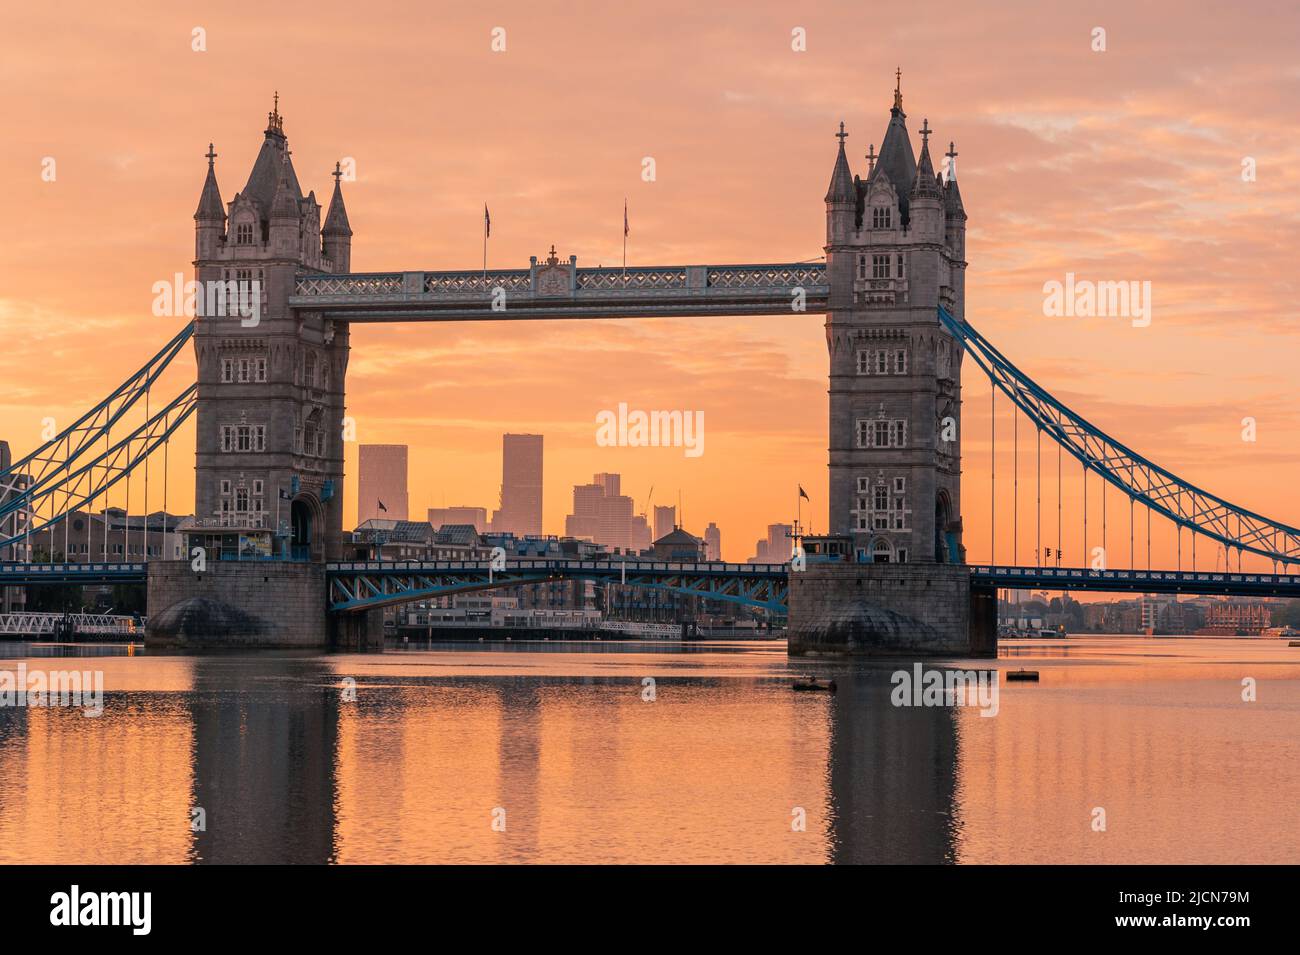 Le légendaire Tower Bridge historique de Londres au crépuscule Banque D'Images